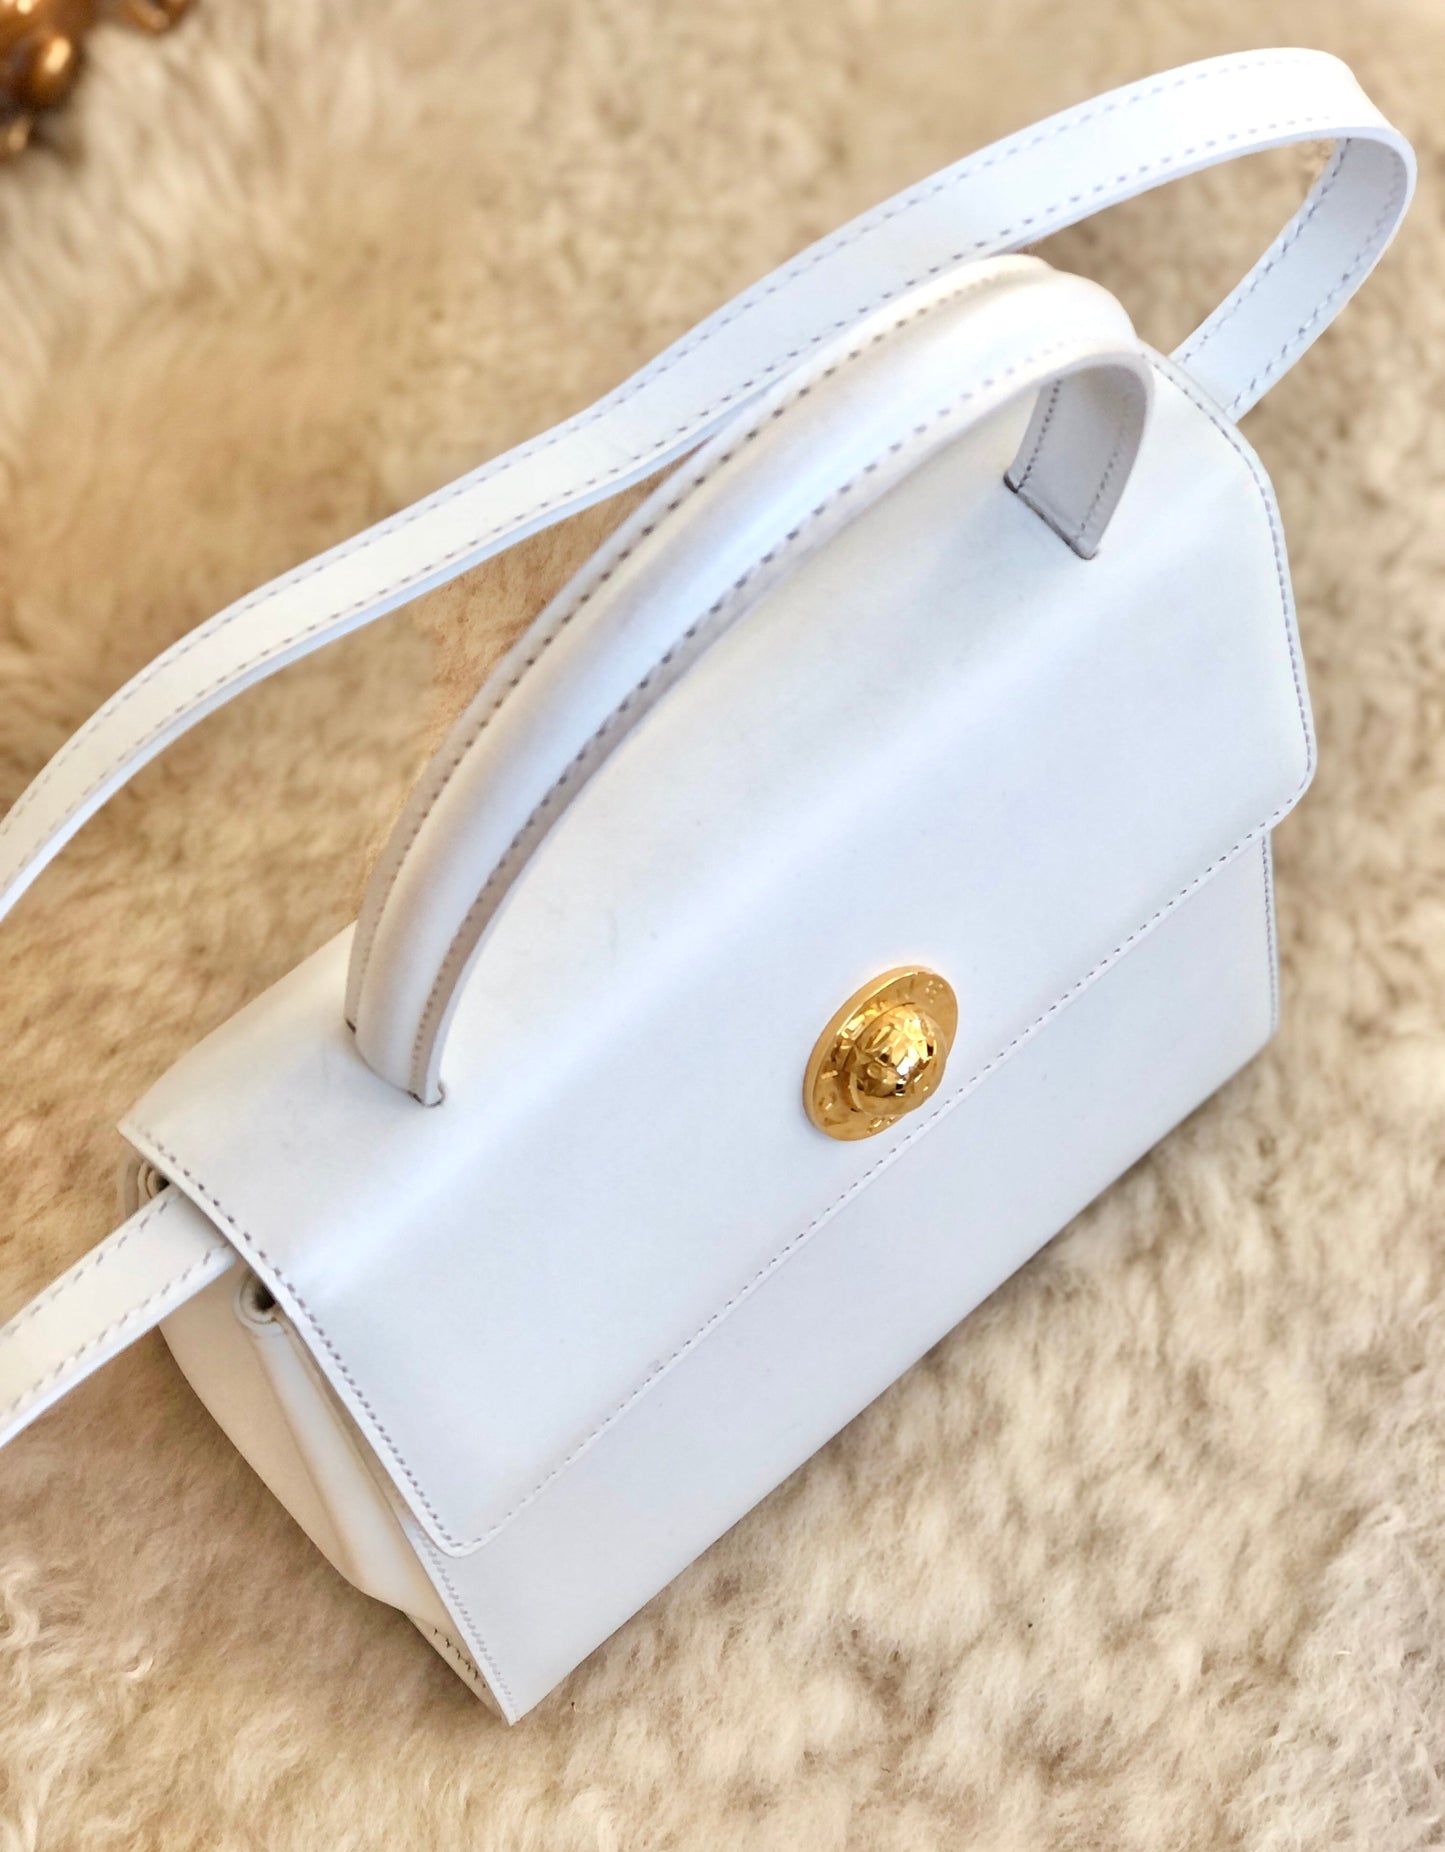 CELINE Starball Handbag Shoulderbag White Old Celine Vintage h3thd8